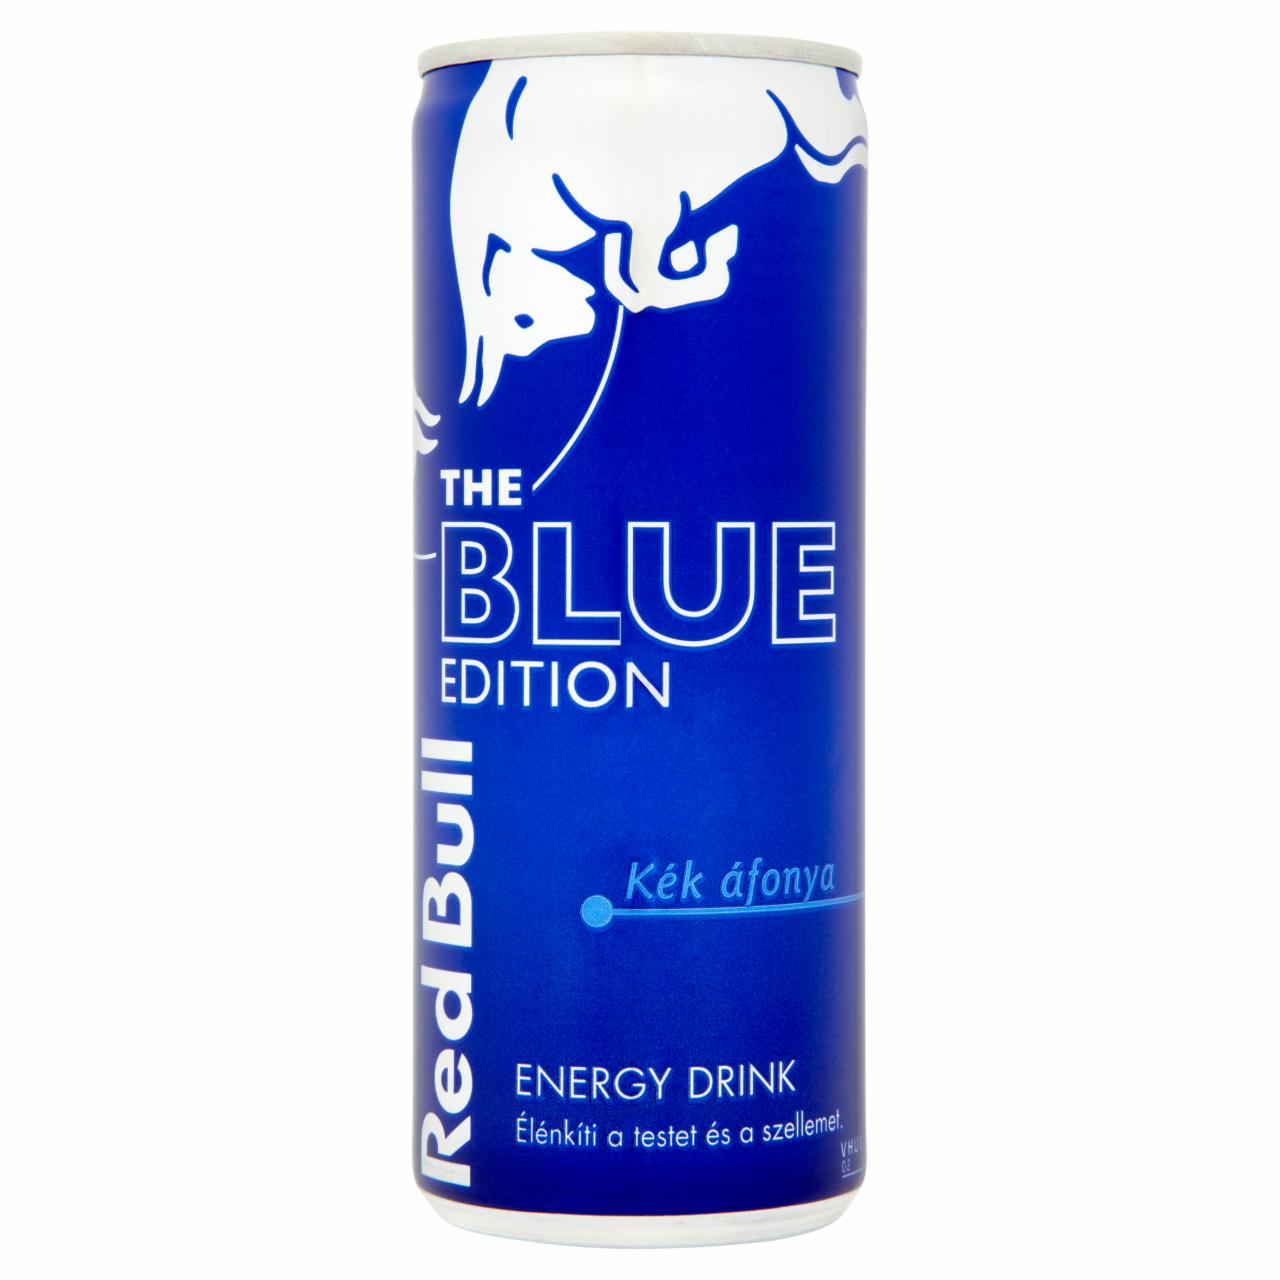 Képek - Red Bull The Blue Edition energiaital kék áfonya ízesítéssel 250 ml